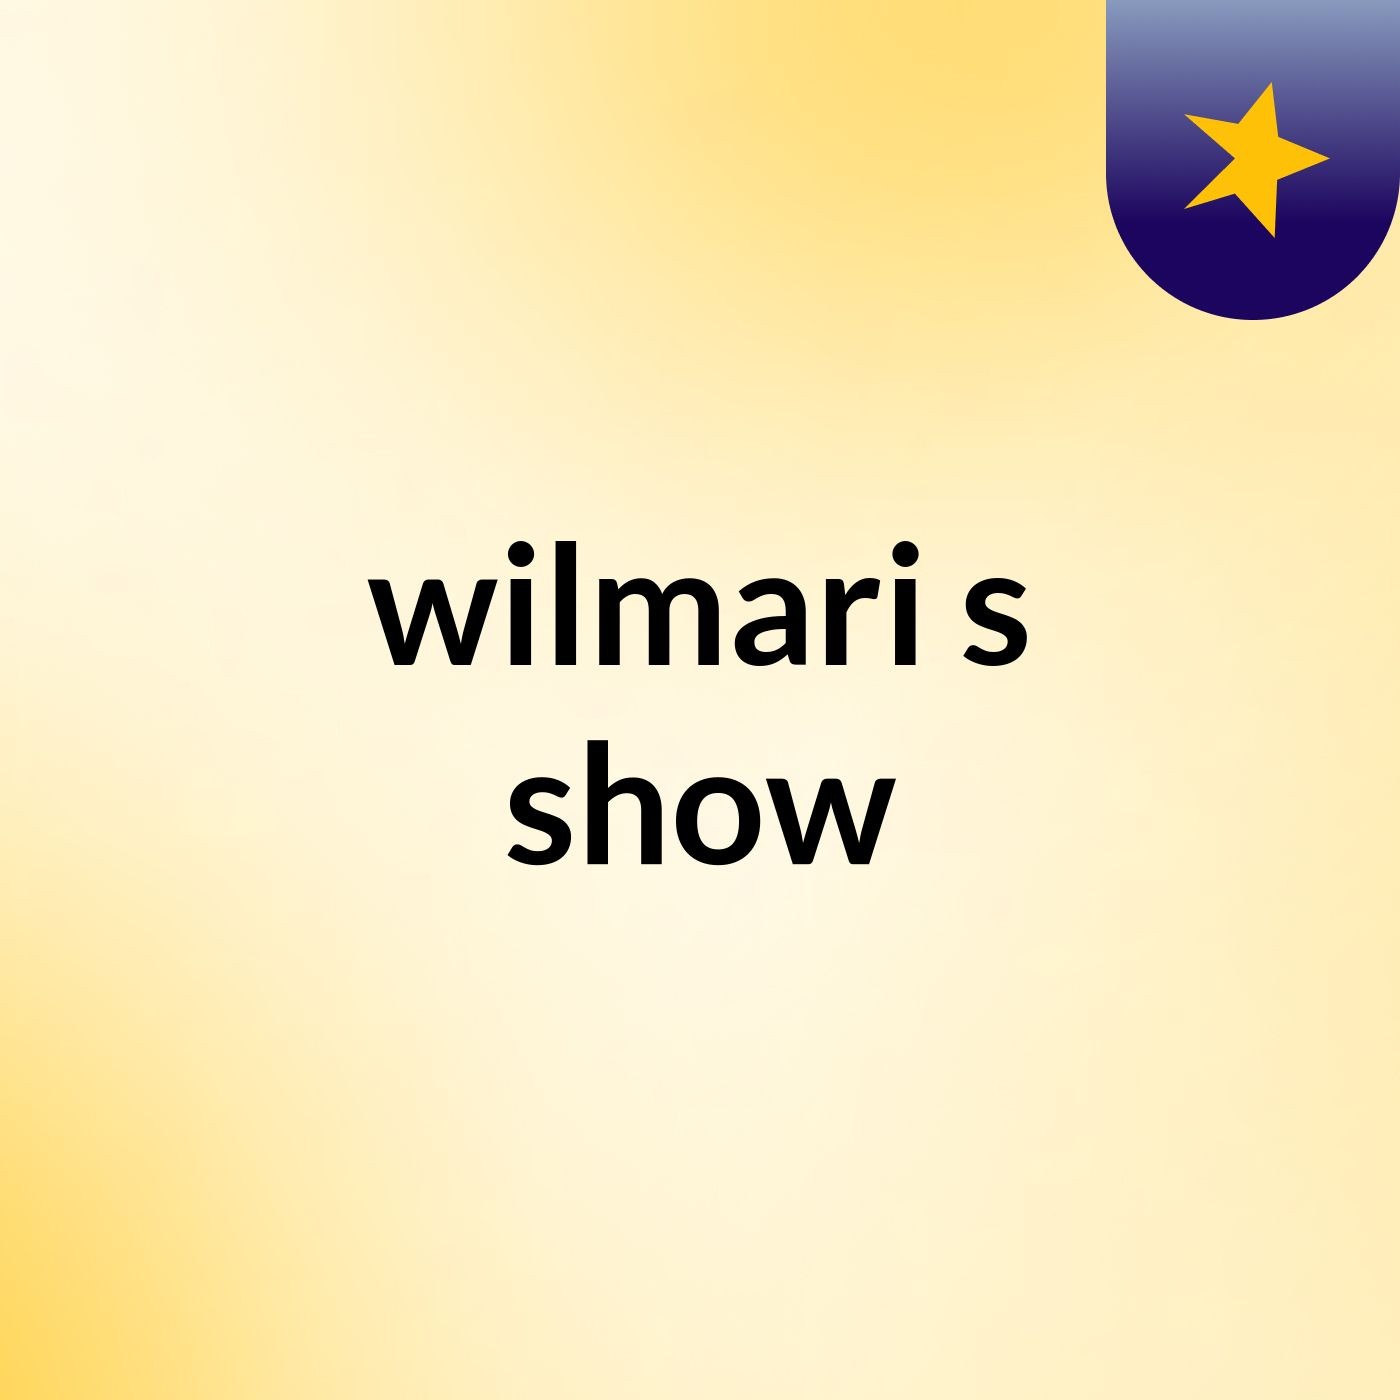 wilmari's show